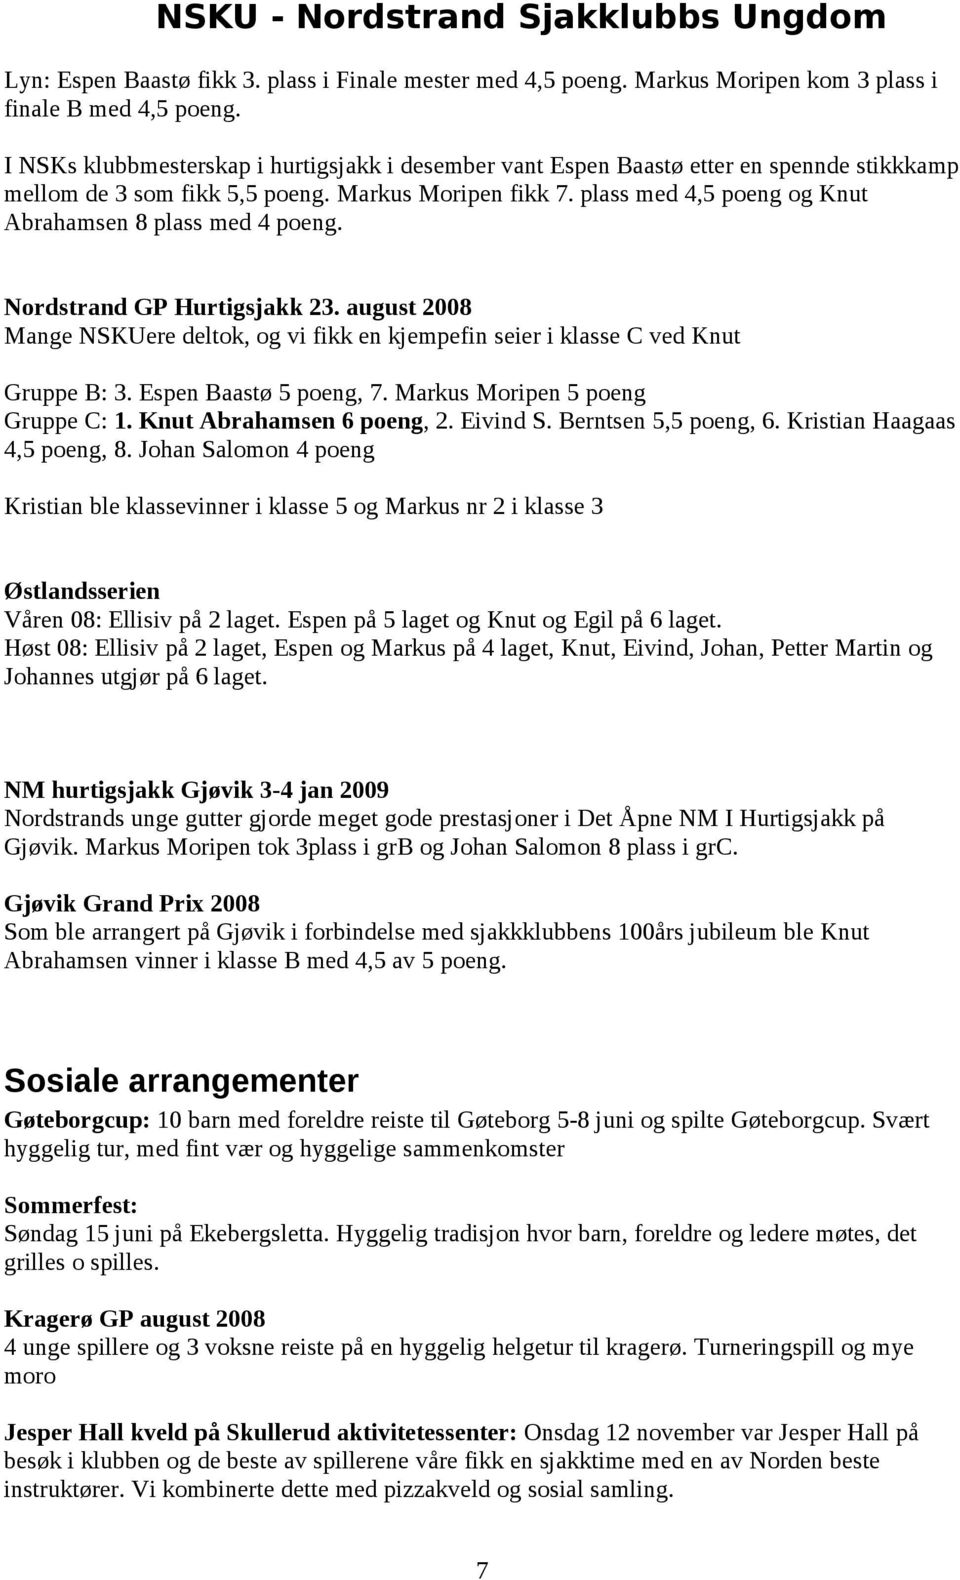 plass med 4,5 poeng og Knut Abrahamsen 8 plass med 4 poeng. Nordstrand GP Hurtigsjakk 23. august 2008 Mange NSKUere deltok, og vi fikk en kjempefin seier i klasse C ved Knut Gruppe B: 3.